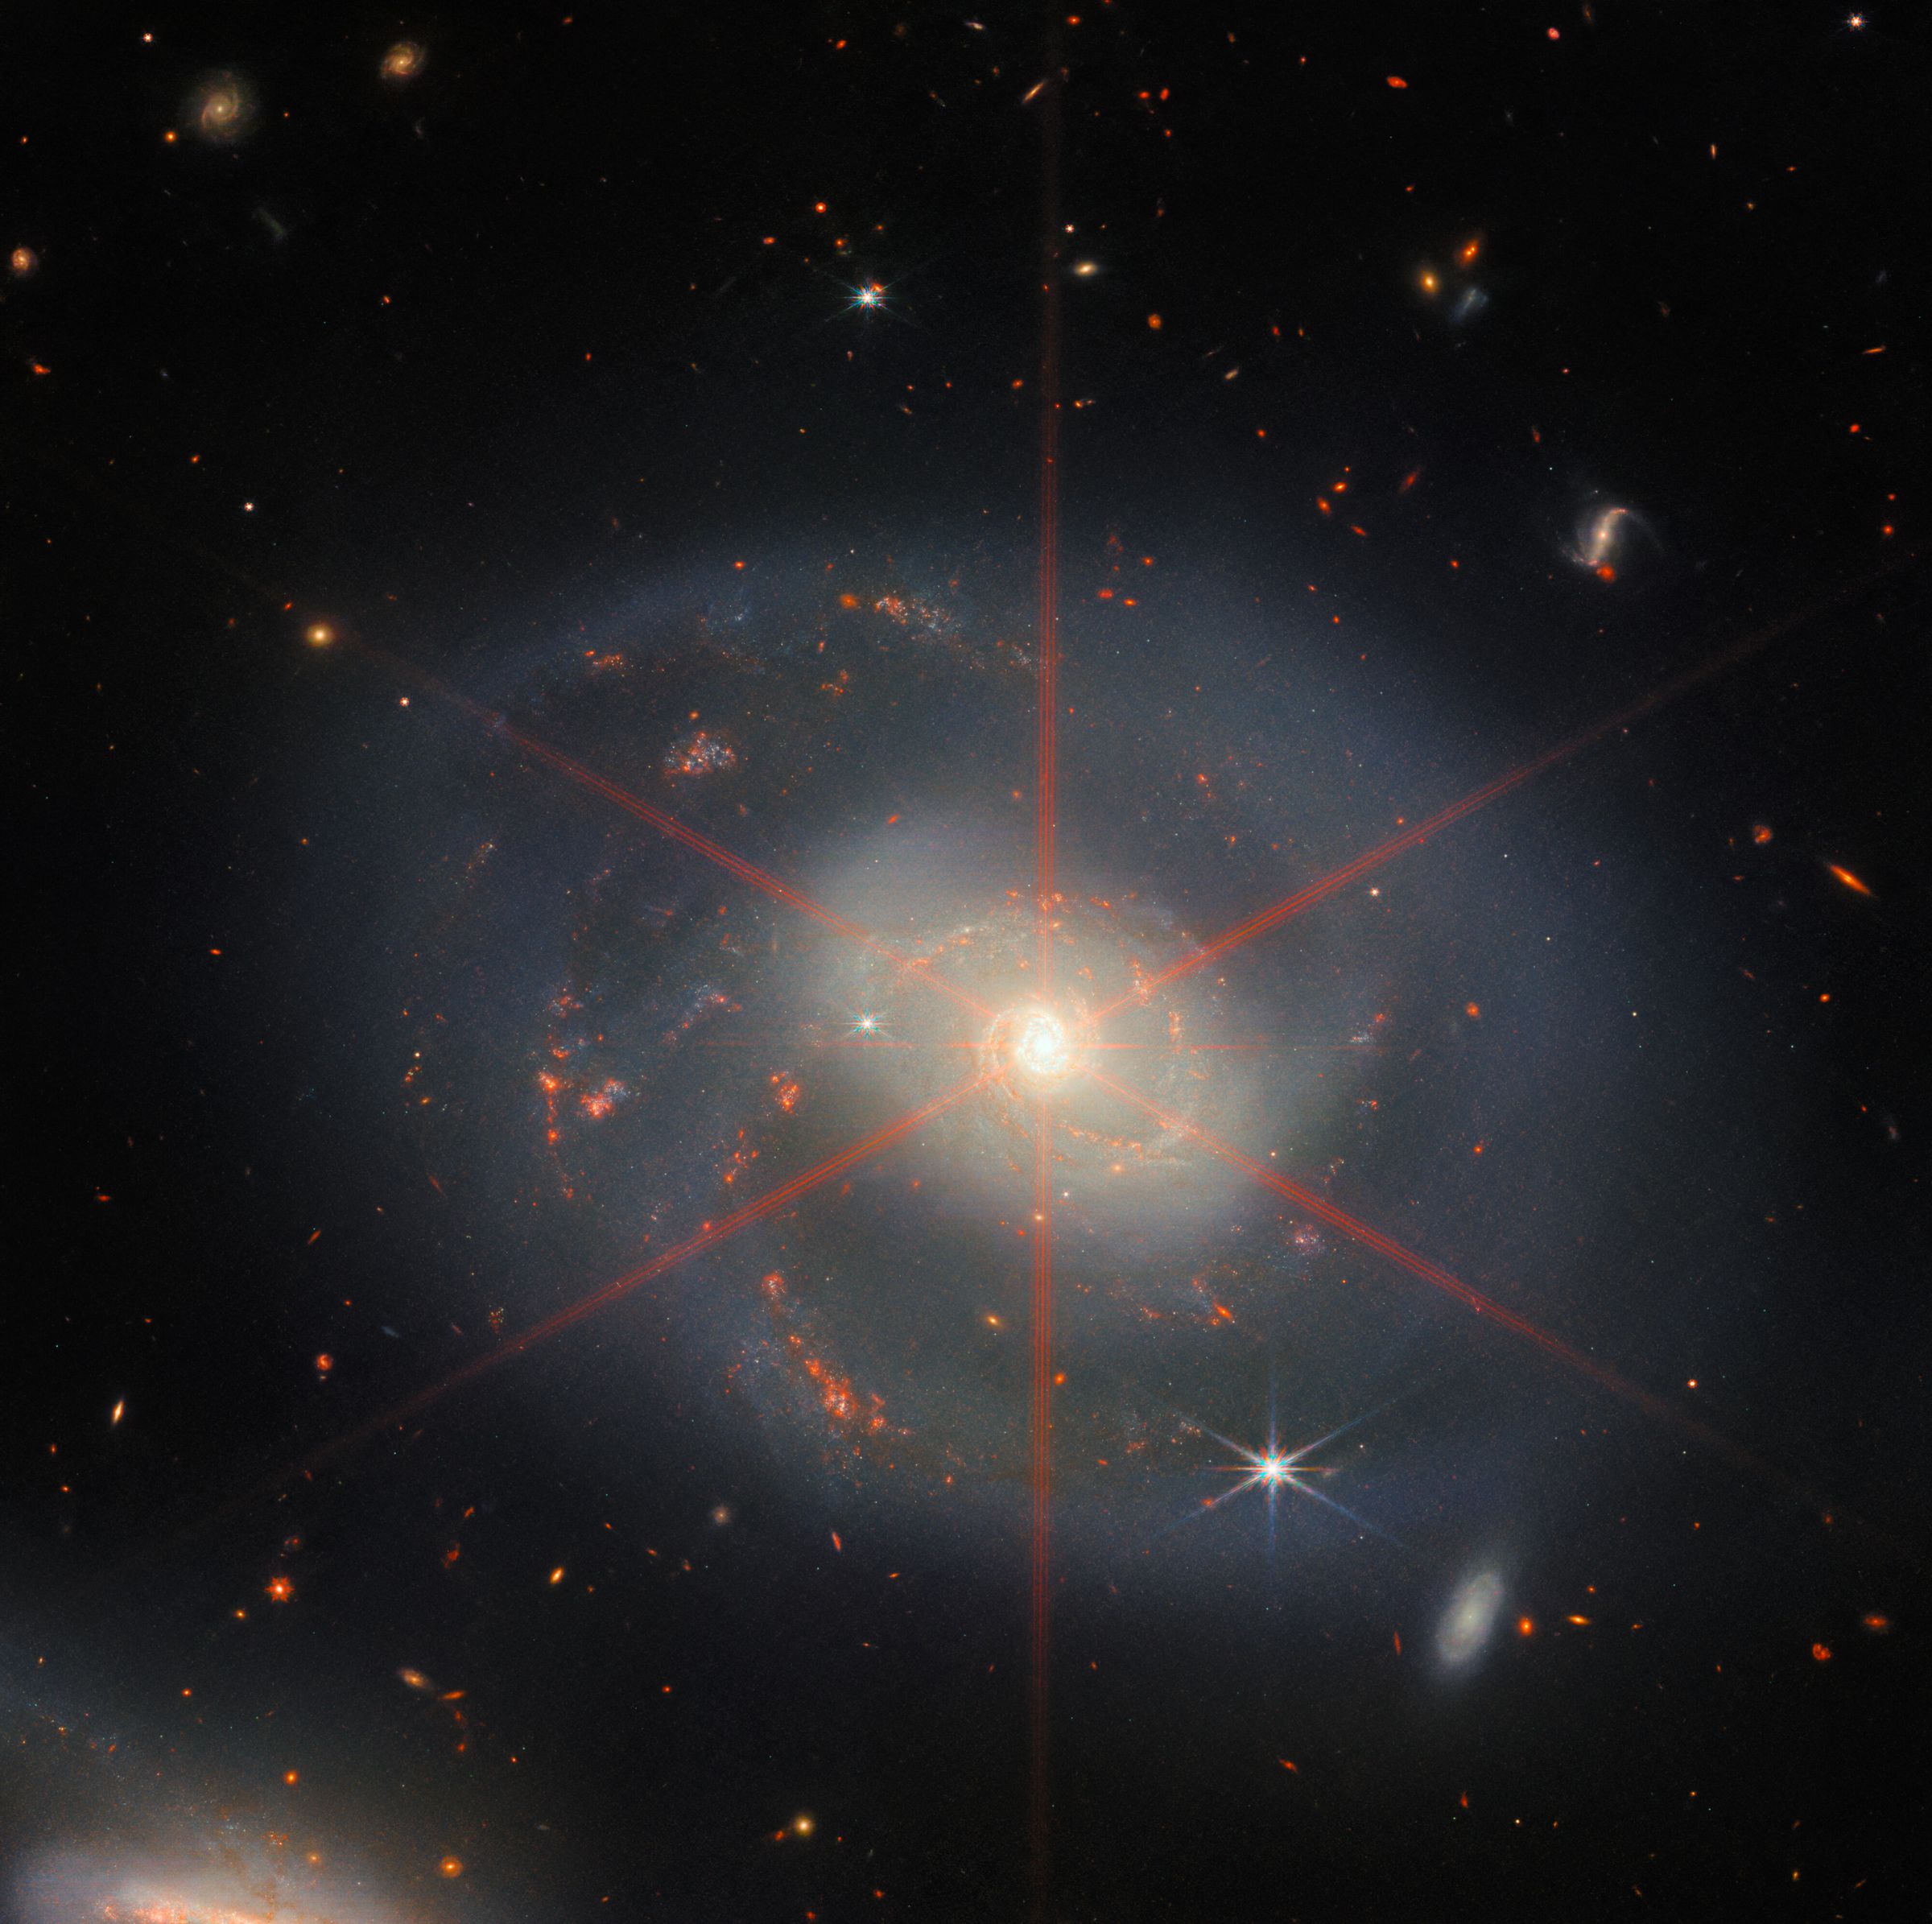 Cette image montre une galaxie spirale dominée par une région centrale brillante.  La galaxie a des teintes bleu-violet avec des régions orange-rouge remplies d'étoiles.  Un grand pic de diffraction peut également être vu, qui apparaît comme un motif stellaire sur la région centrale de la galaxie.  Beaucoup d'étoiles et de galaxies remplissent le décor de fond